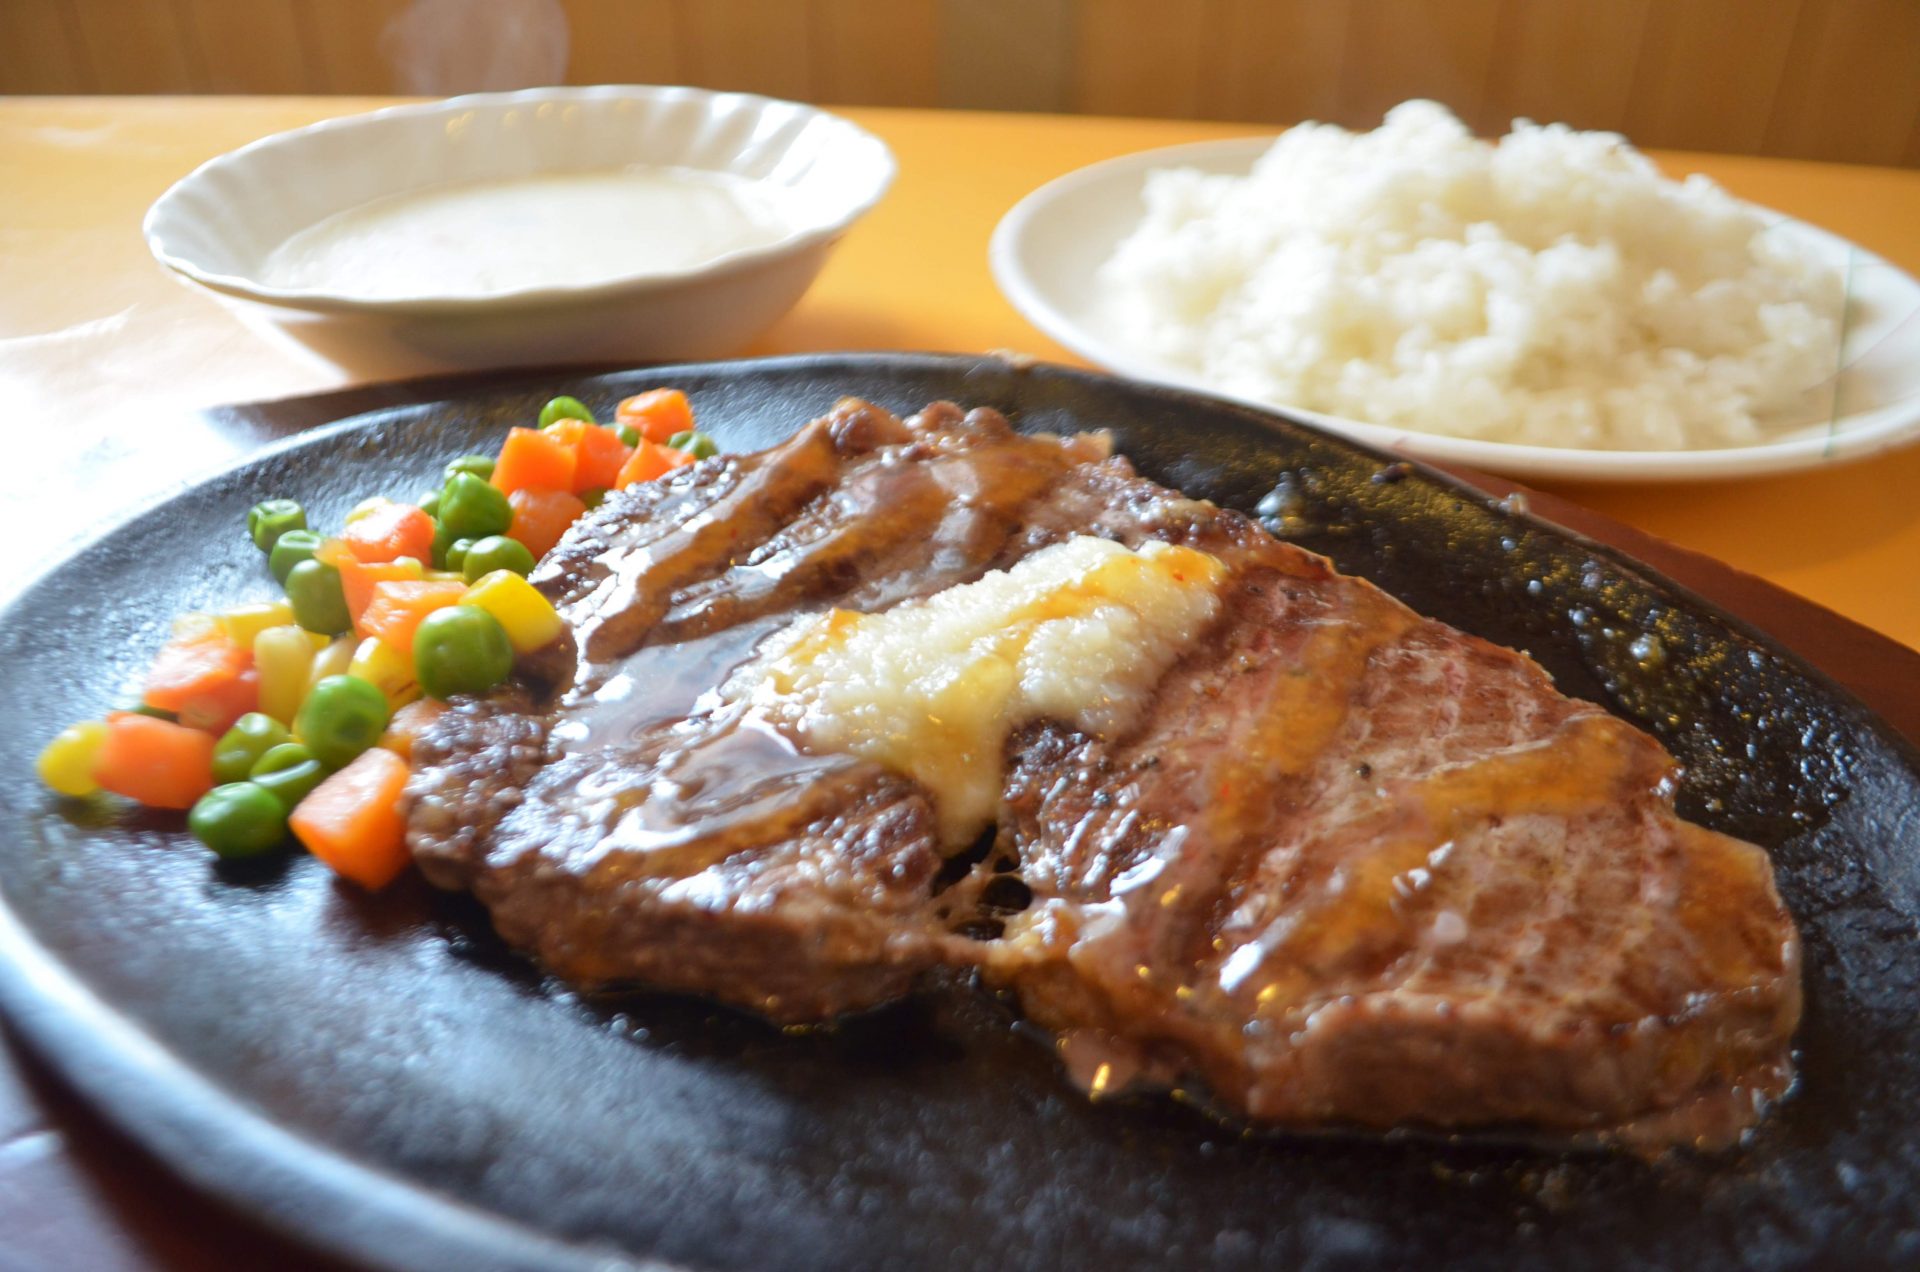 ライス スープ食べ放題のステーキが700円 名護市の レストラン海洋 沖縄の観光情報はfeel Okinawa